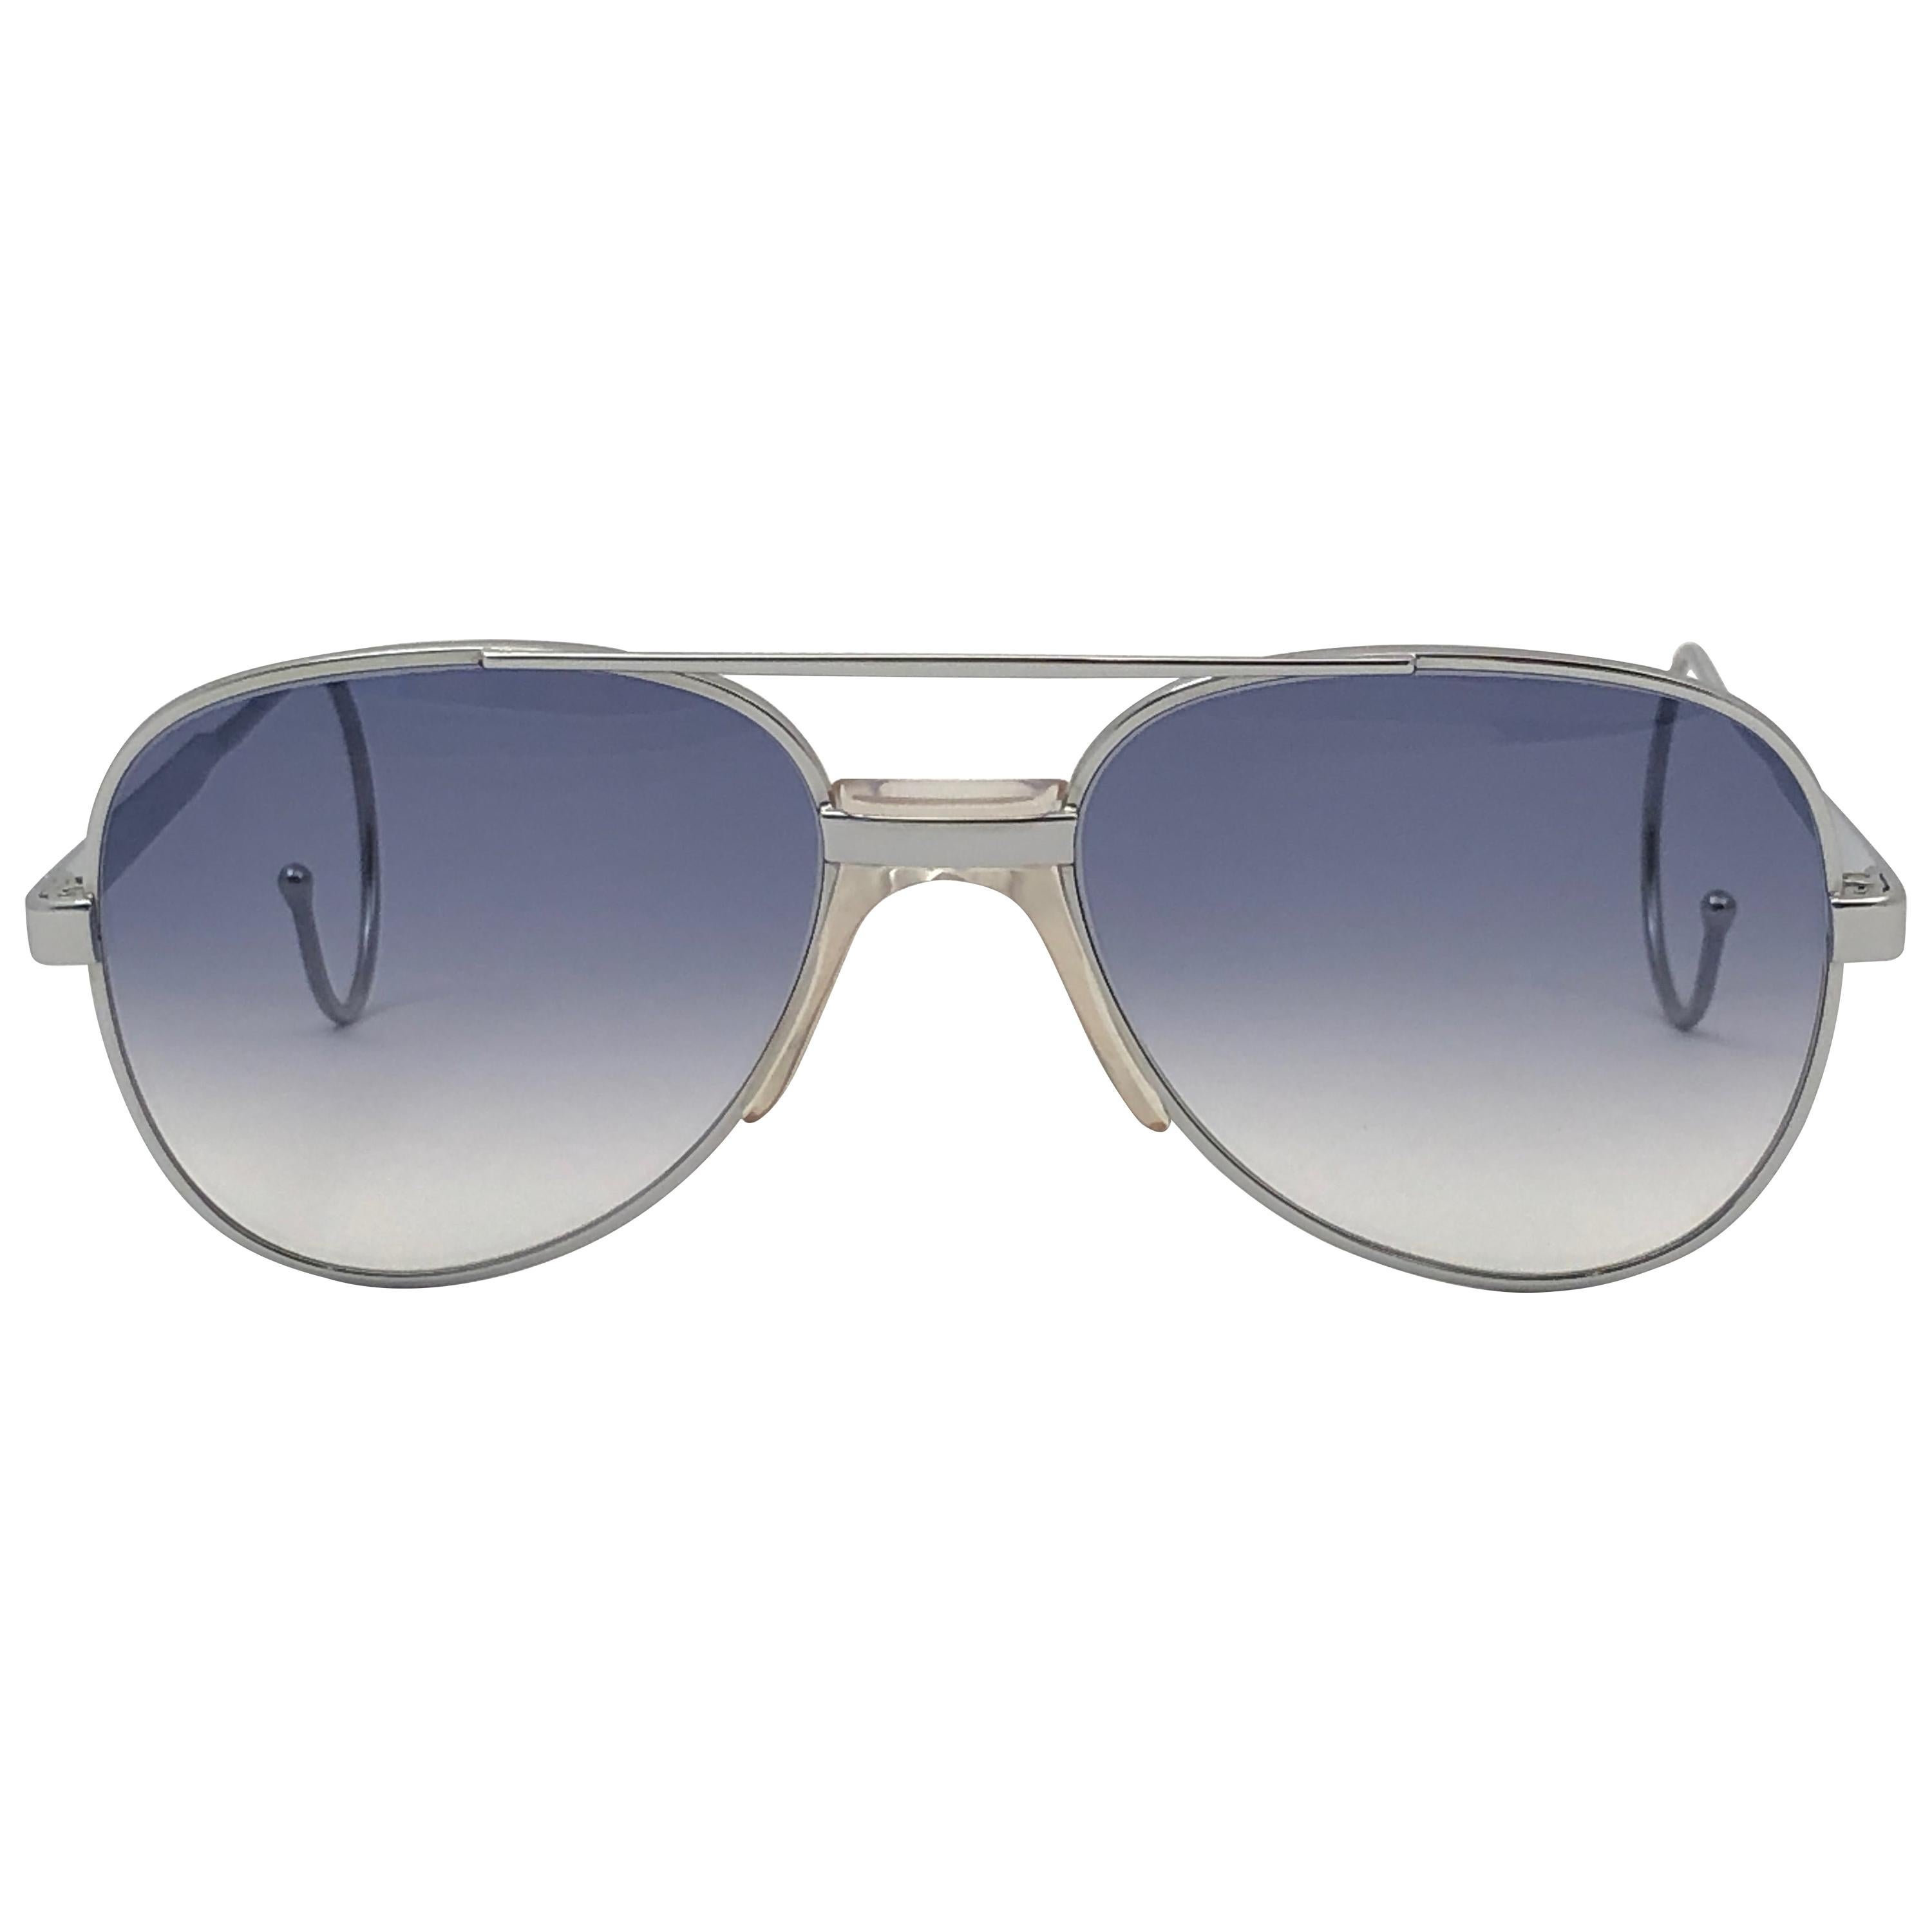 Serge Kirchhofer lunettes de soleil vintage neuves à monture argentée bleu argentée, Autriche 624 en vente